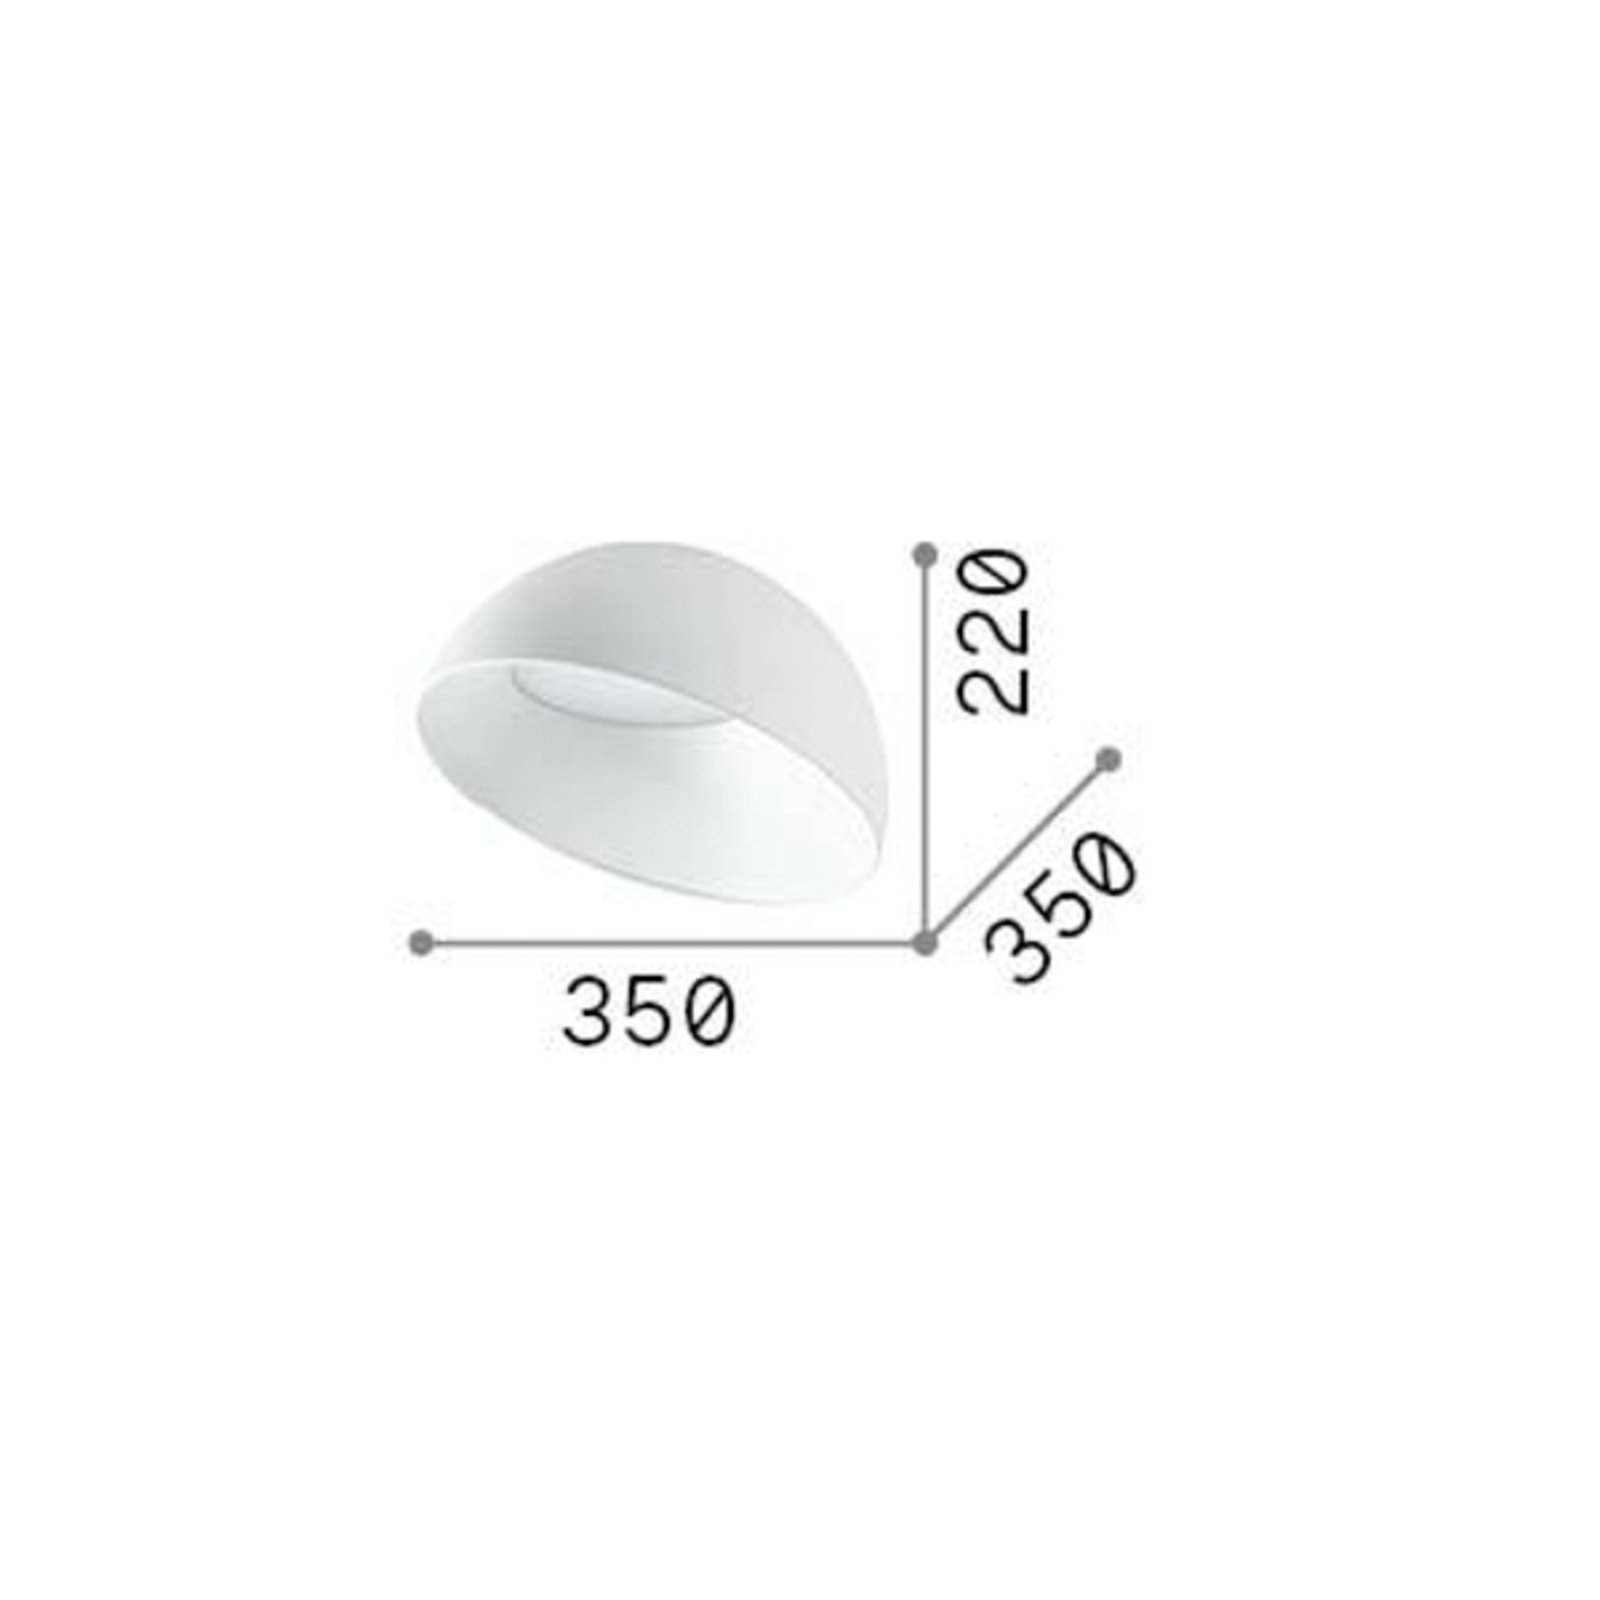 Ideal Lux LED-kattovalaisin Corolla-2, valkoinen, metalli, Ø 35 cm